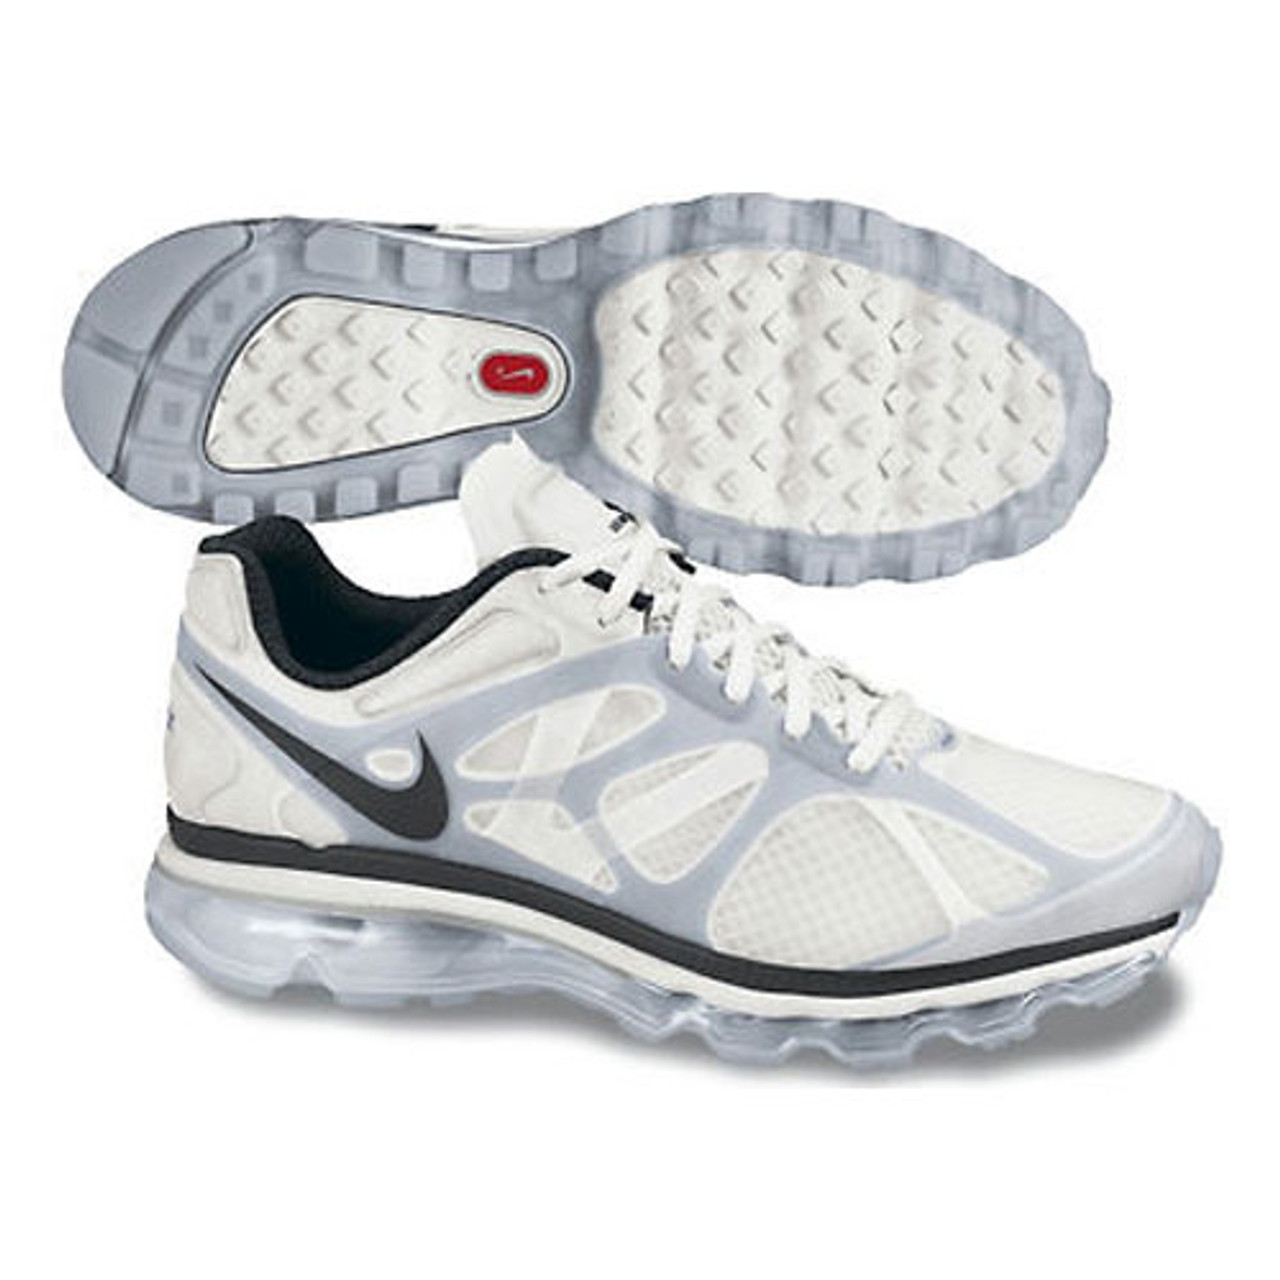 Nike + 2012 White/Silver - | Nike Men's Athletic & More Shoolu.com | Shoolu.com